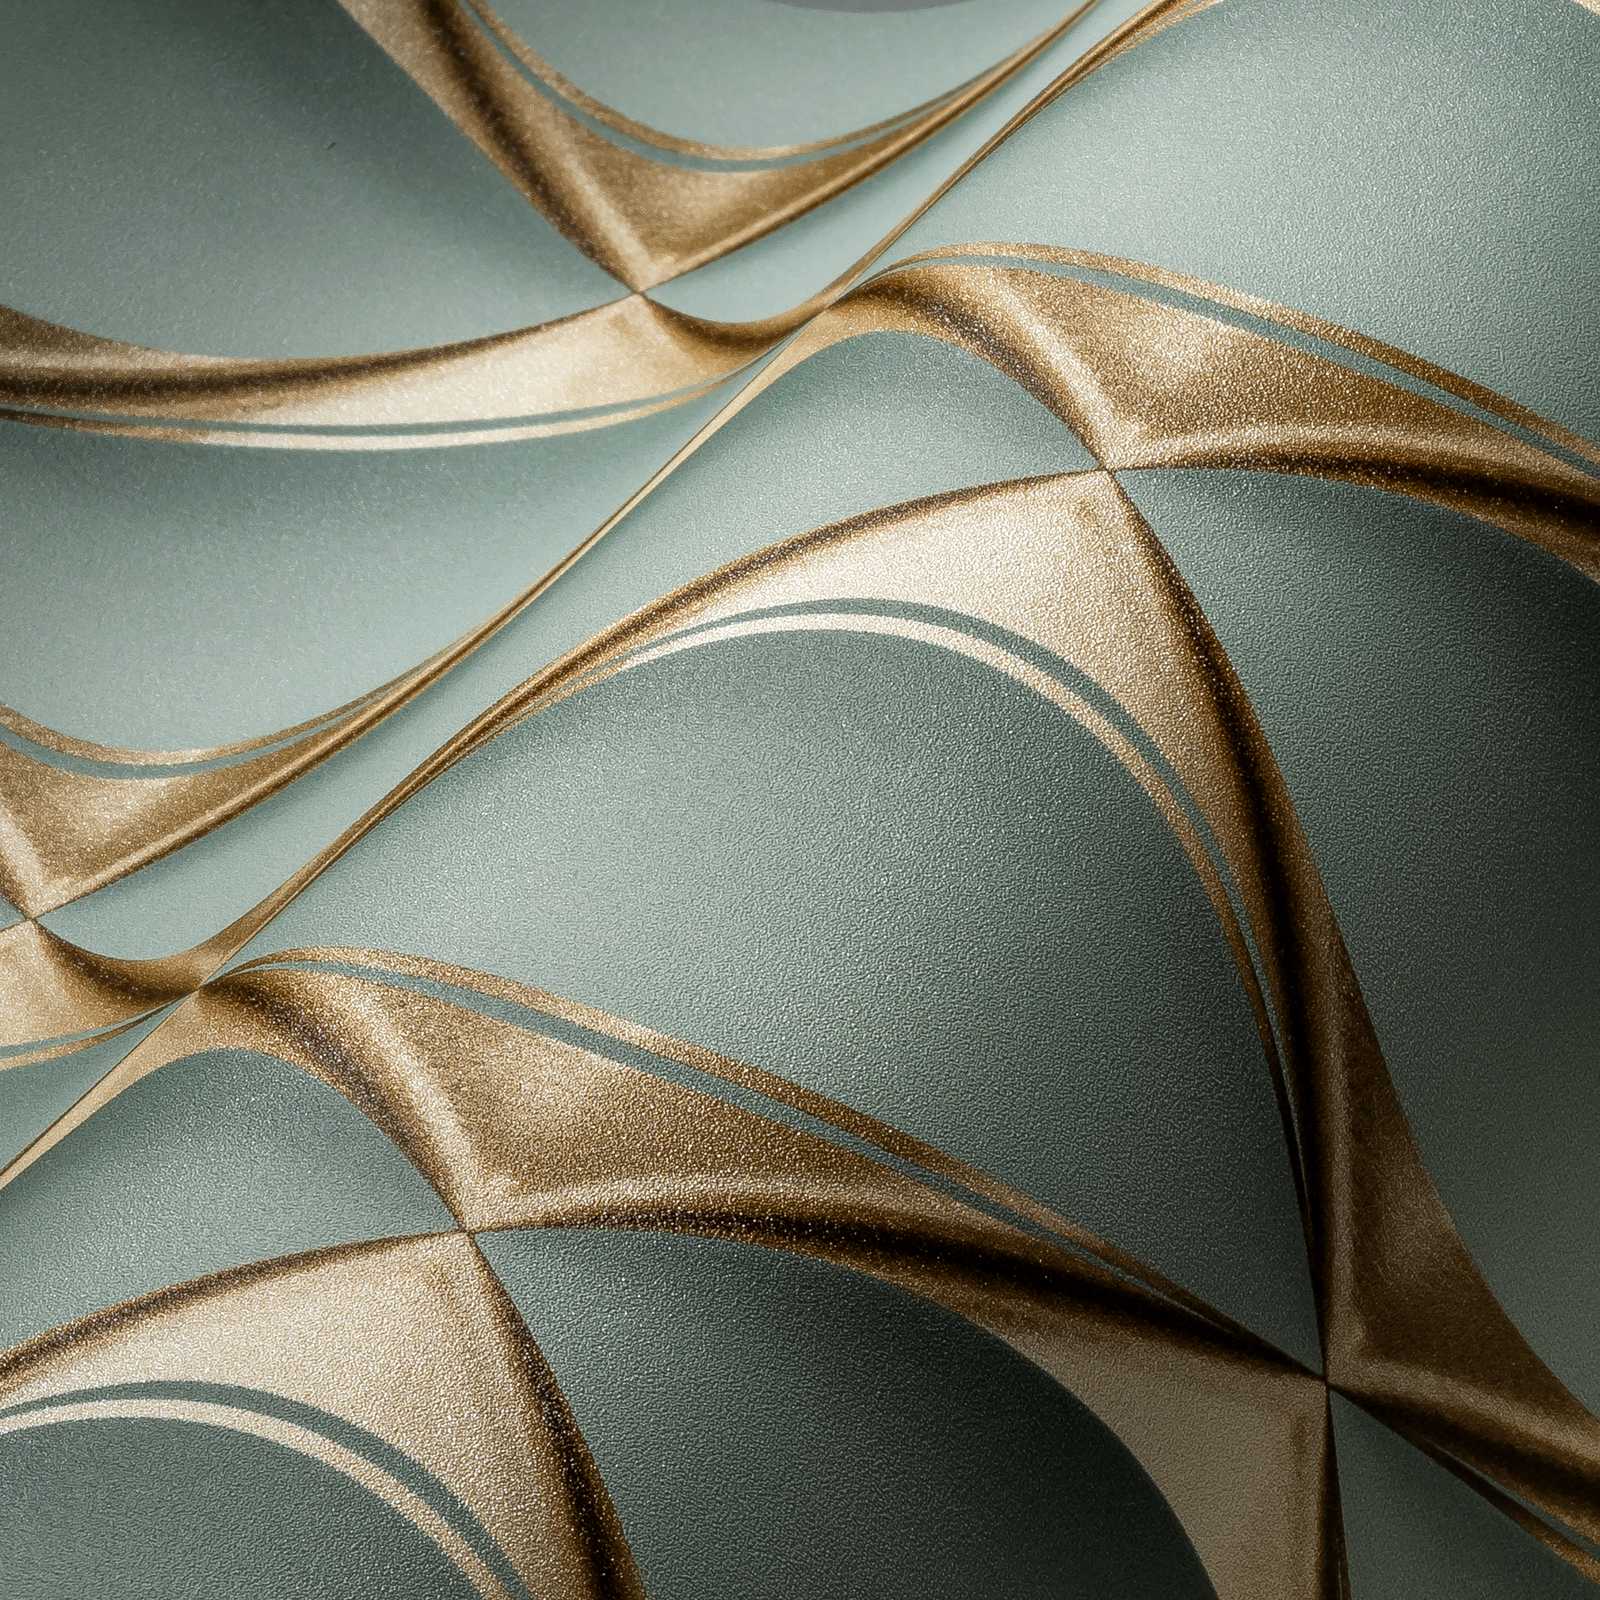             Papier peint 3D design avec motif à facettes métalliques - vert, métallique
        